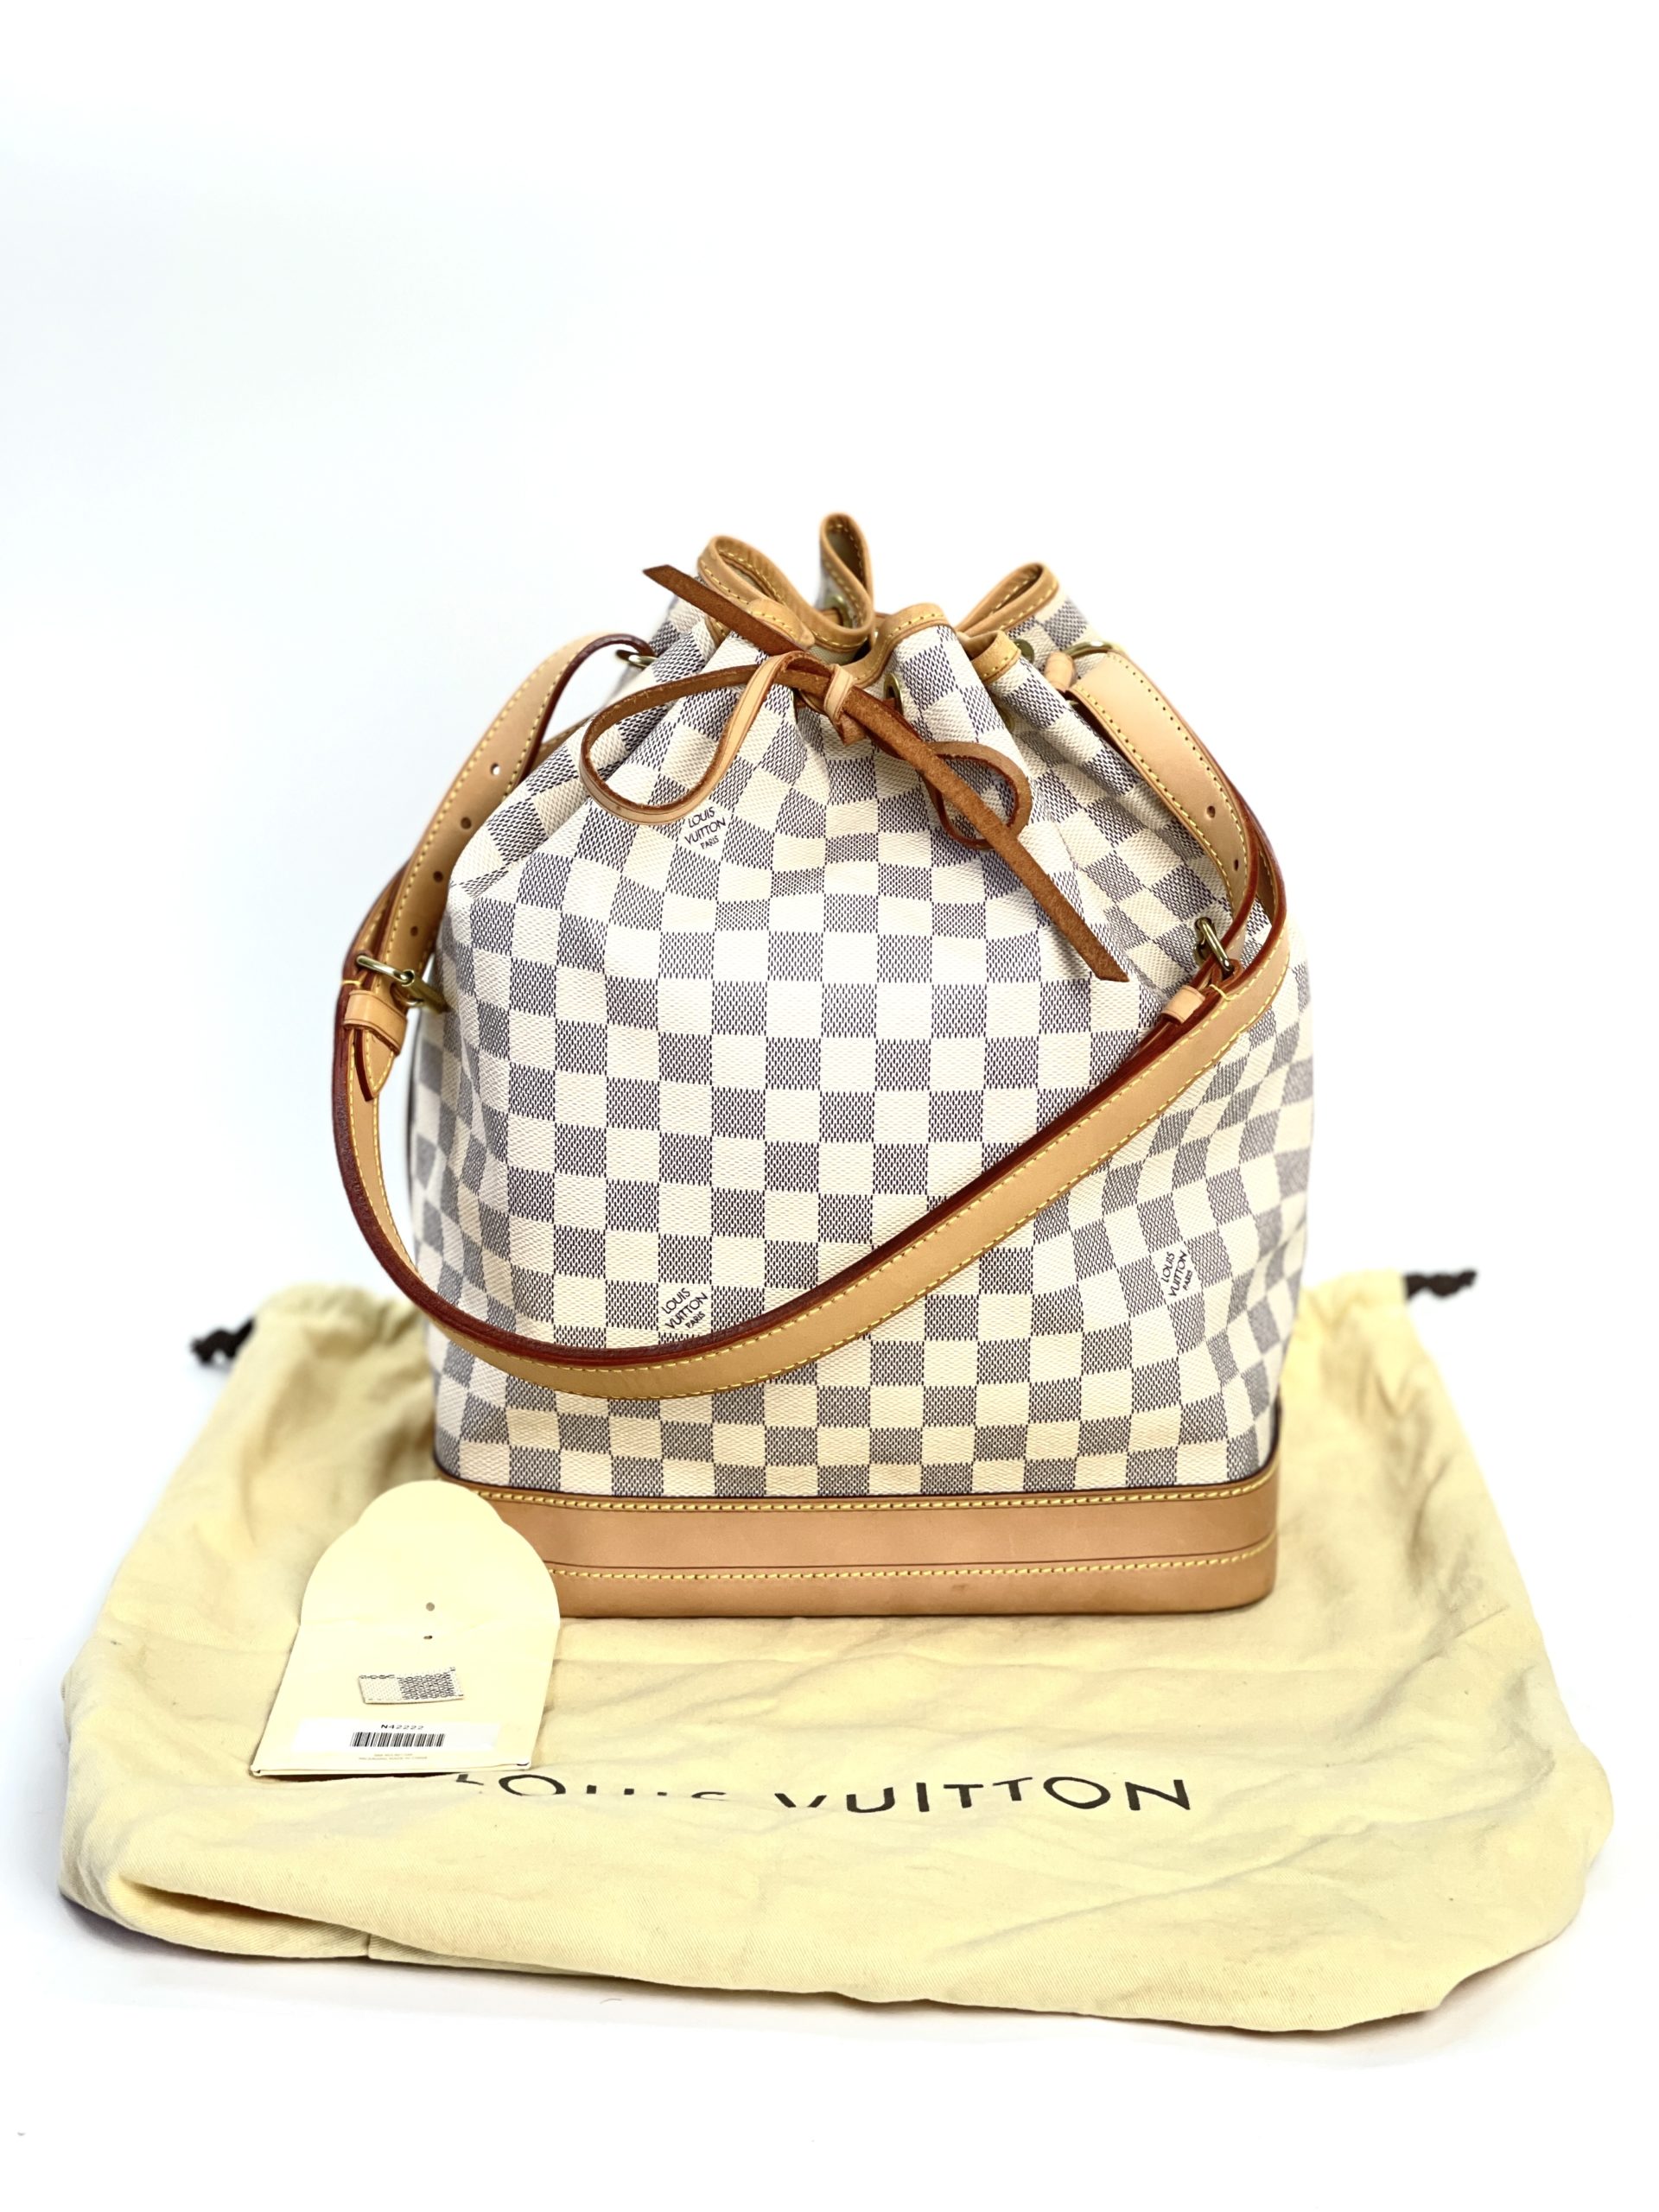 LOUIS VUITTON Damier Azur Large Noe Shoulder Bag